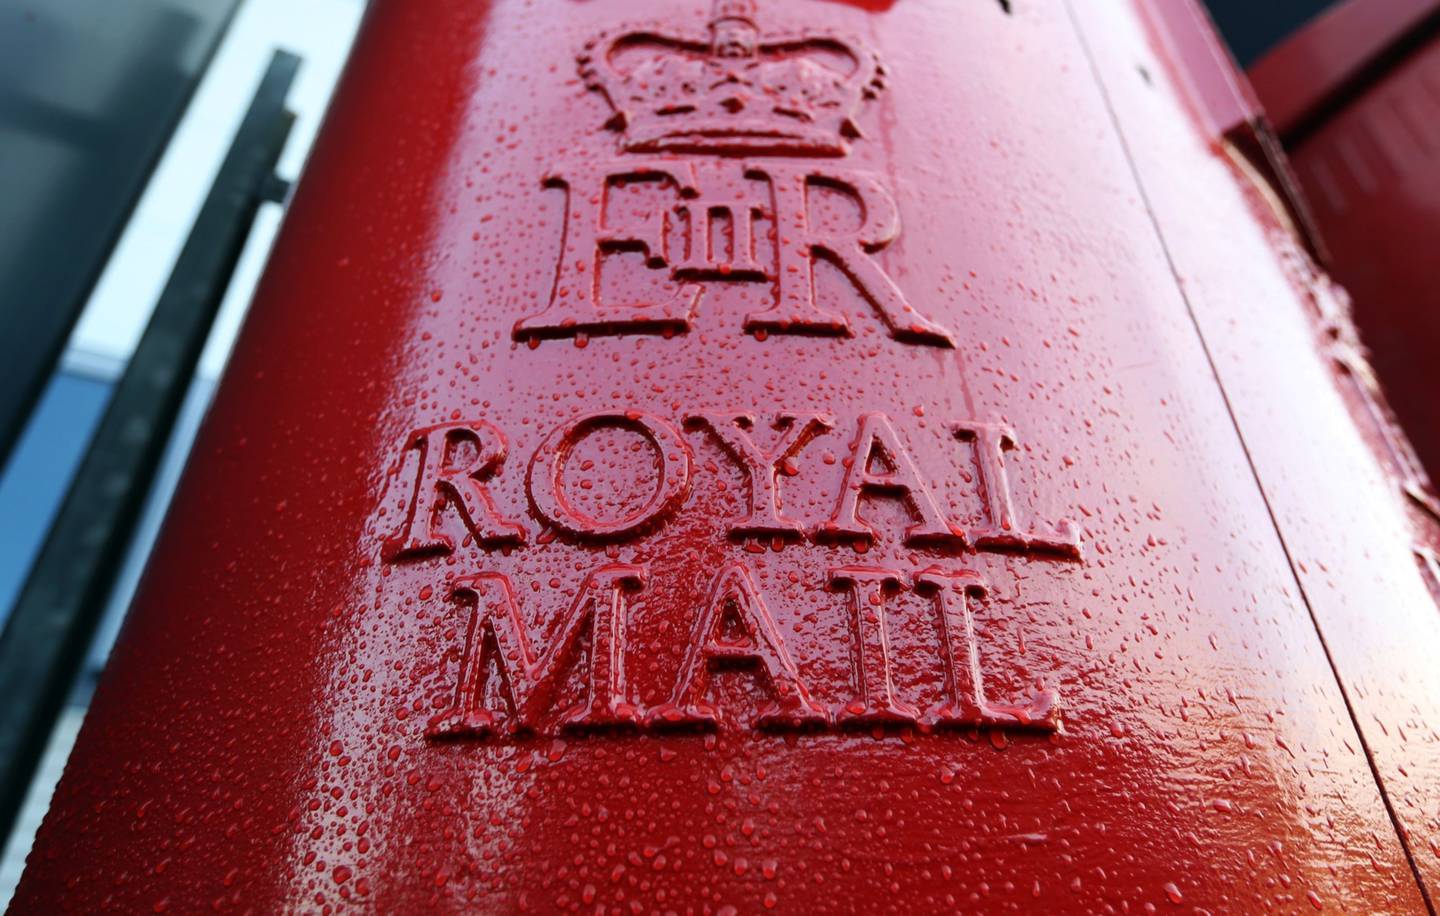 Un logotipo se encuentra en el lado de un buzón de correo de Royal Mail, servicio postal británico, en una oficina de clasificación. Fotógrafo: Chris Ratcliffe/Bloomberg
dfd